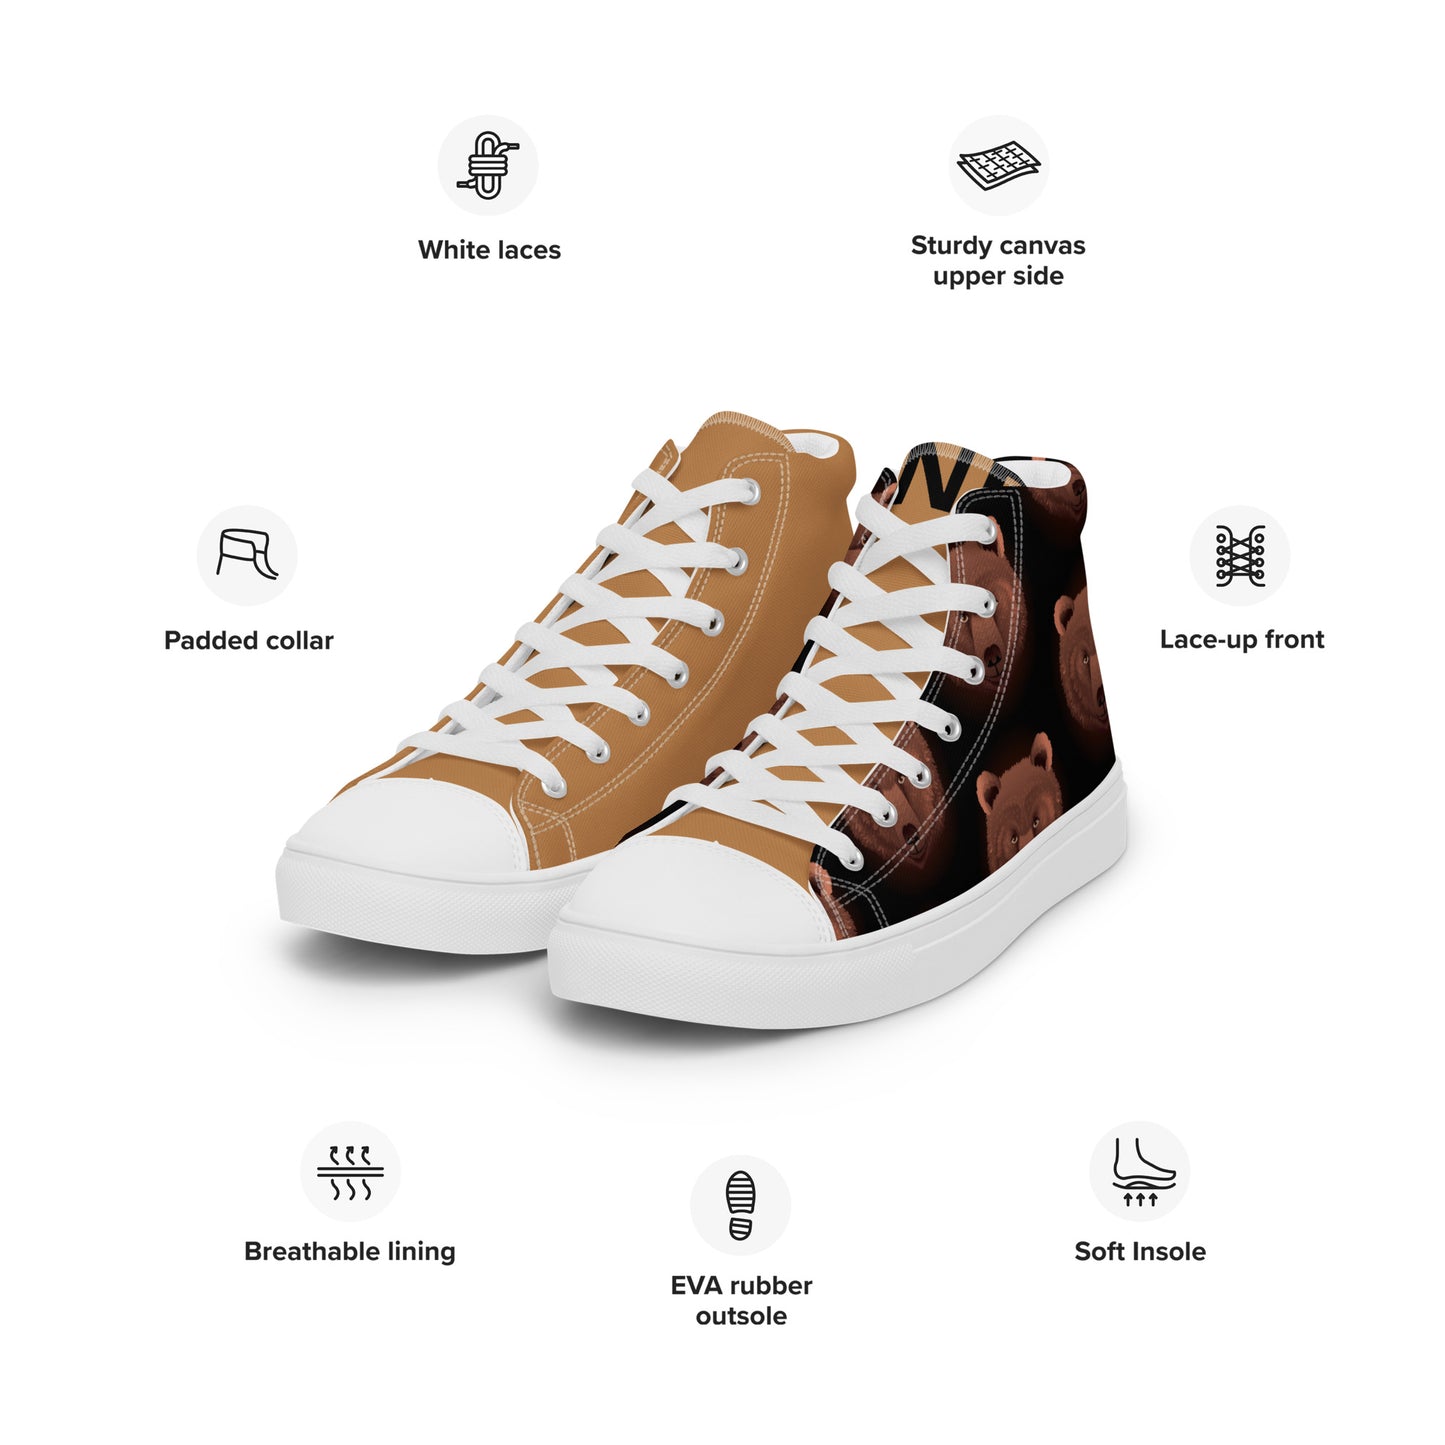 Pure Nature Project ORSO Marsicano Sneakers alte in tela da uomo